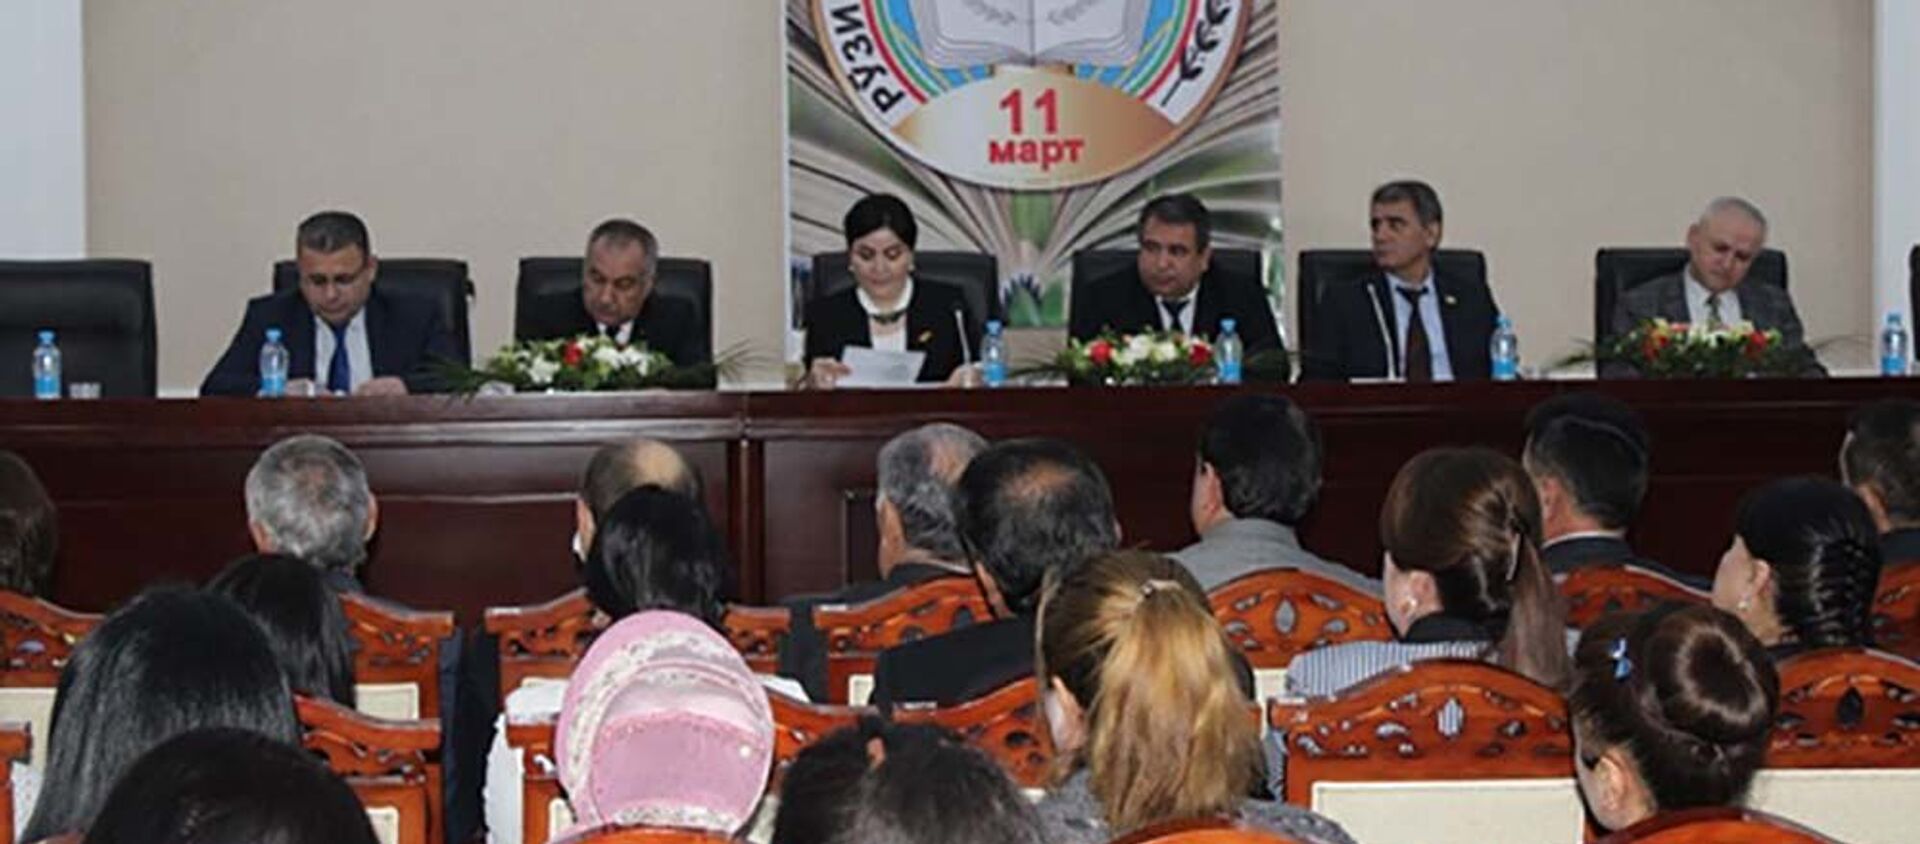 В Национальной библиотеке Таджикистана состоялось торжественное собрание в честь «Дня таджикской прессы» - Sputnik Тоҷикистон, 1920, 11.03.2021